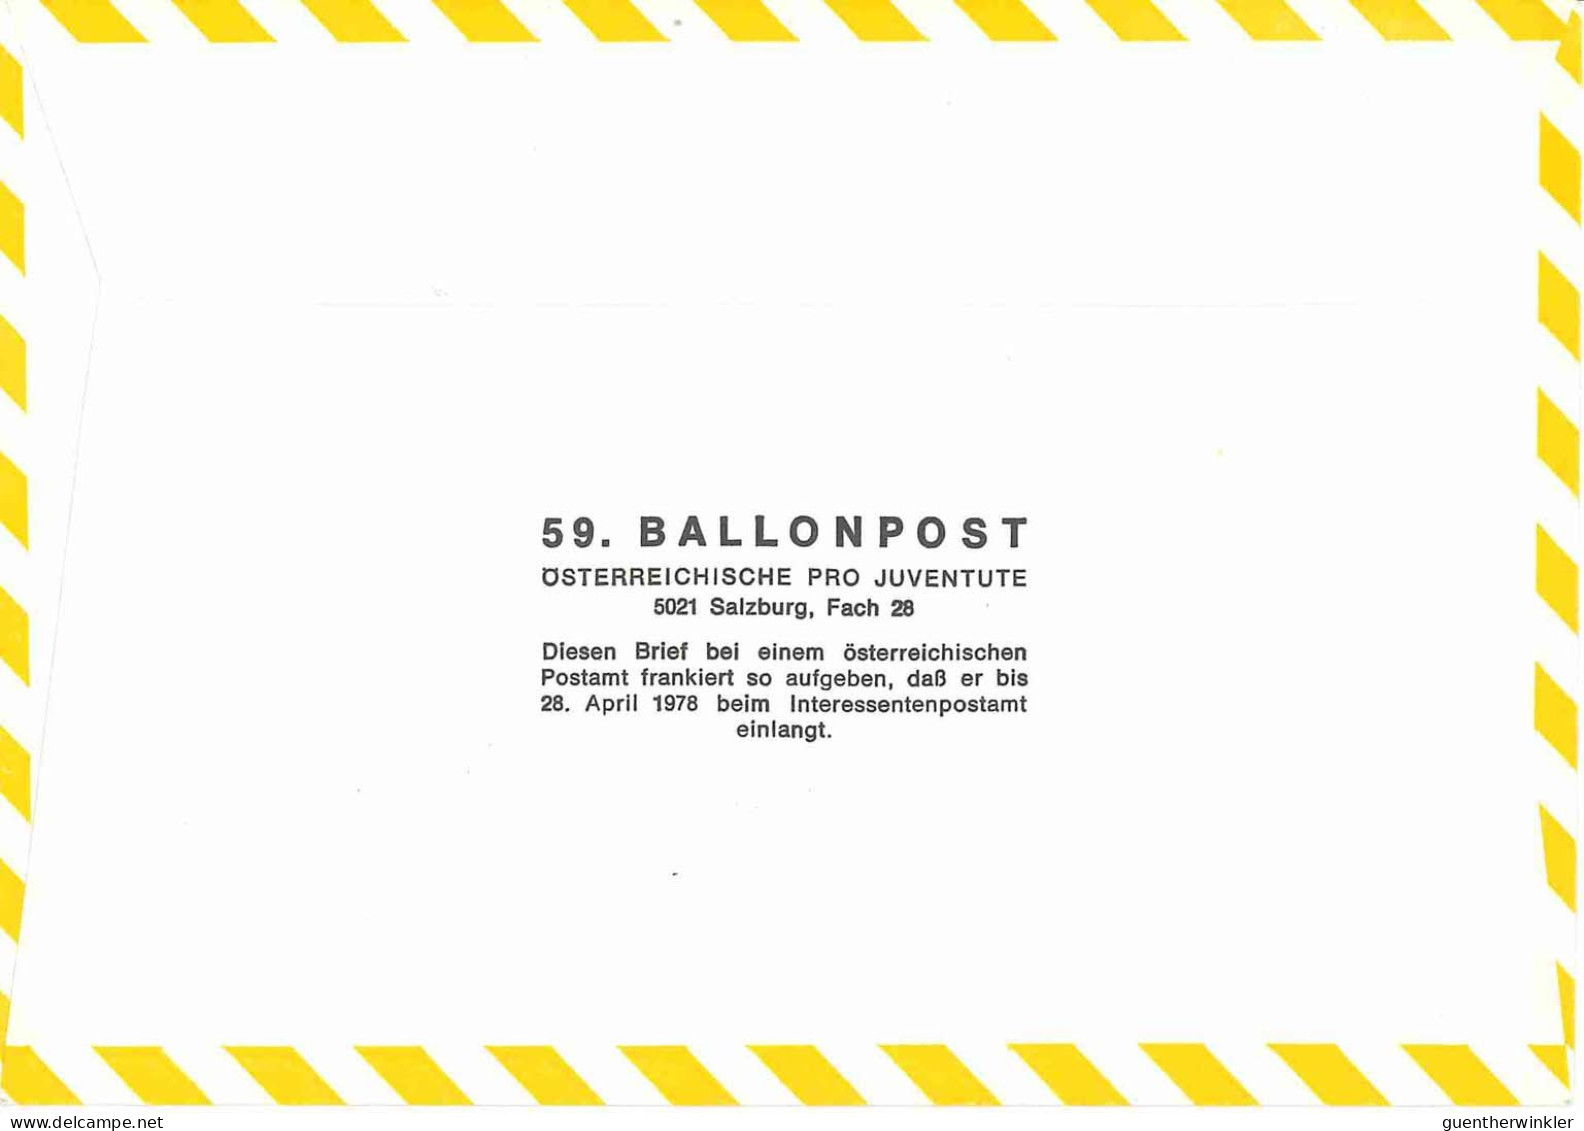 Regulärer Ballonpostflug Nr. 59a Der Pro Juventute [RBP59a] - Ballonpost